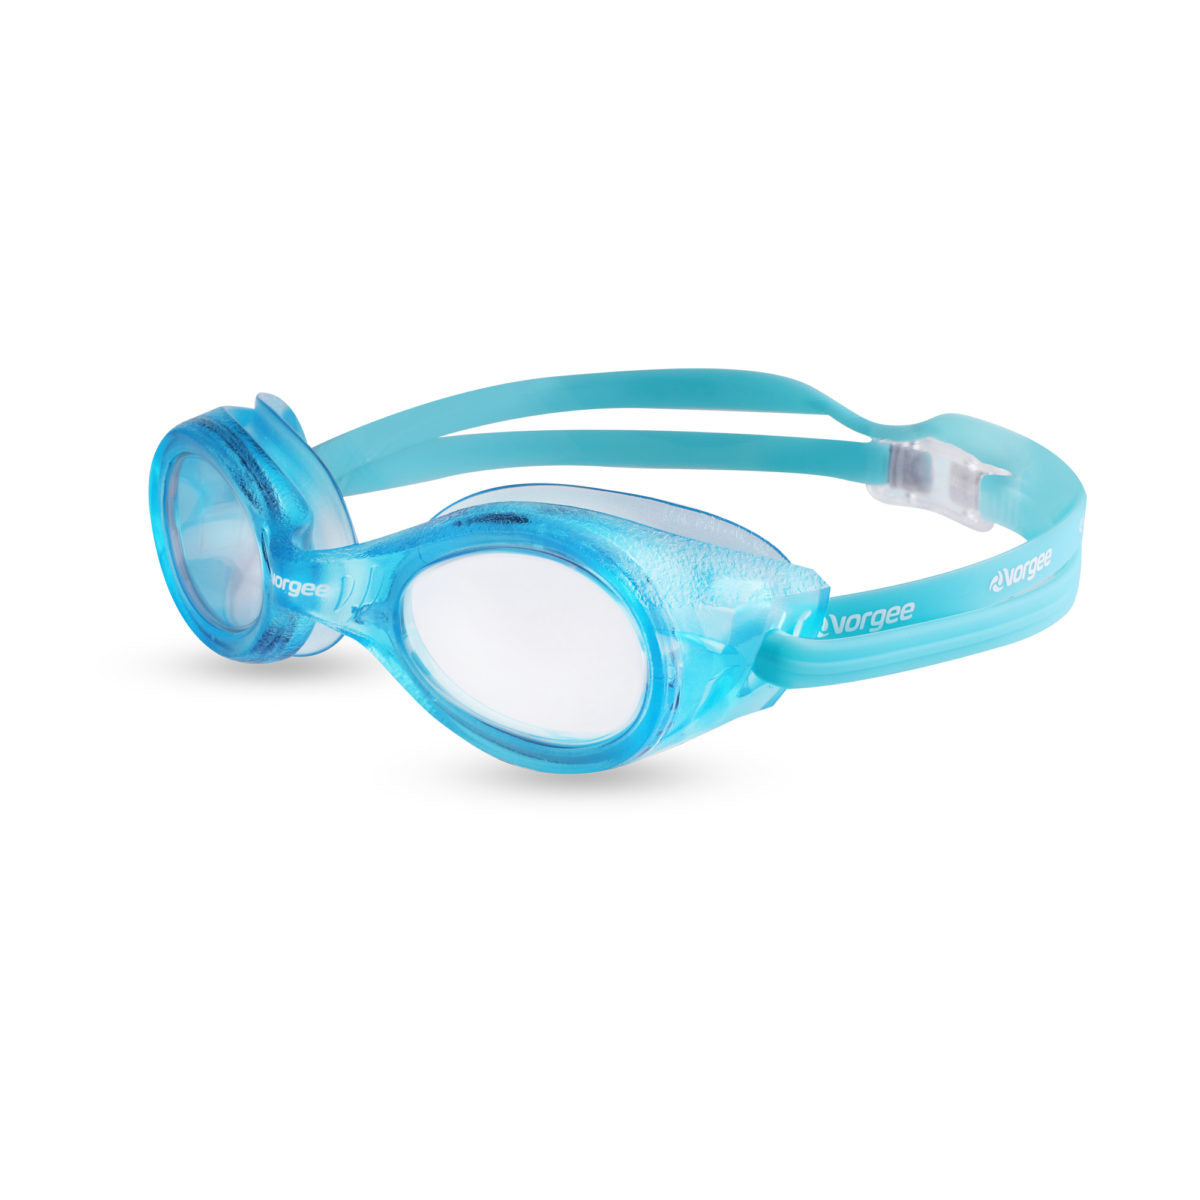 Vorgee Adult Swim Goggles